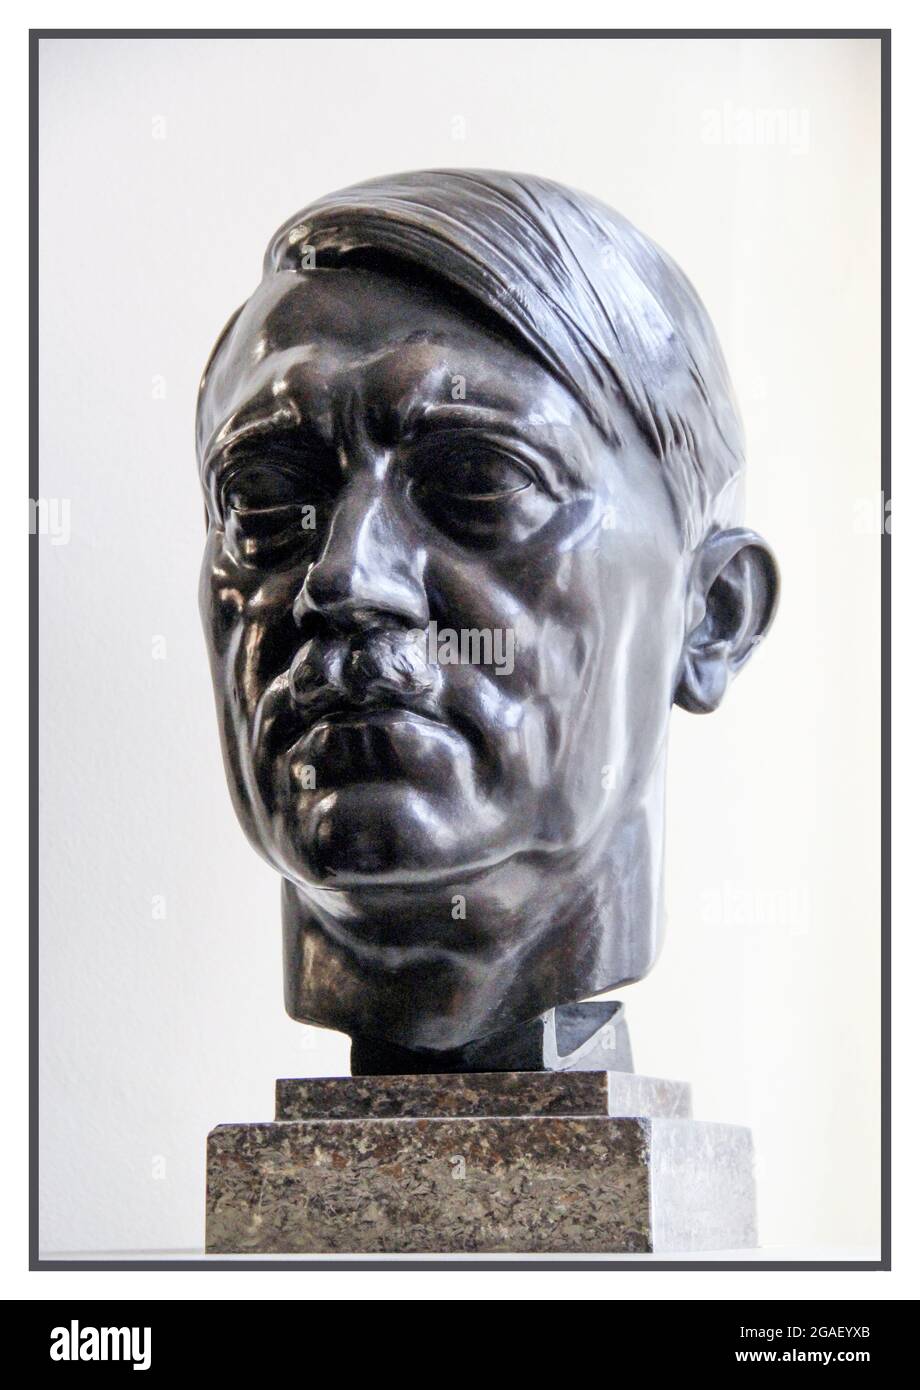 ADOLF HITLER Bronze Büste Skulptur Portrait Büste von Adolf Hitler, nach dem 2. Weltkrieg gefangen genommen. Eines von vielen, die in der NS-Bundesregierung und in offiziellen Gebäuden zu finden sind Stockfoto